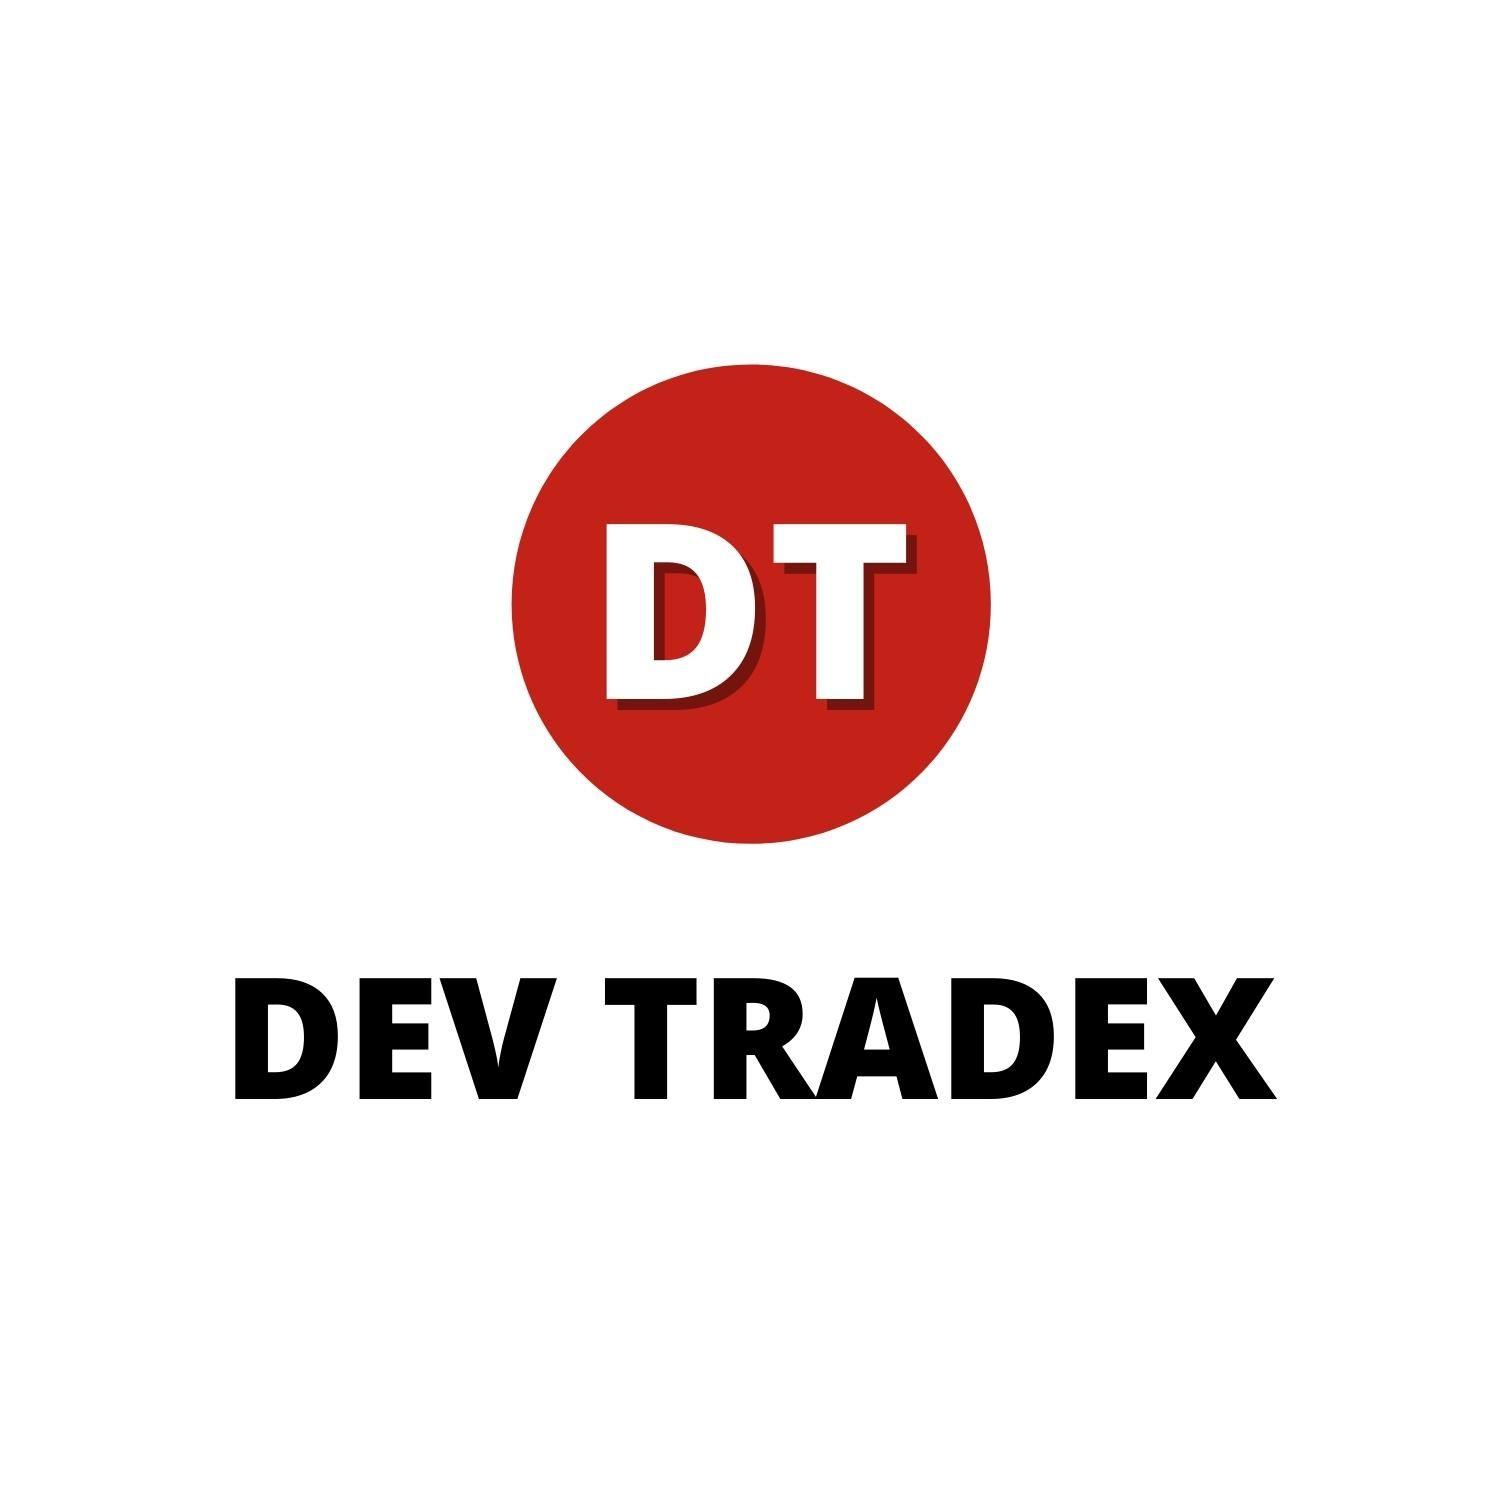 Dev Tradex